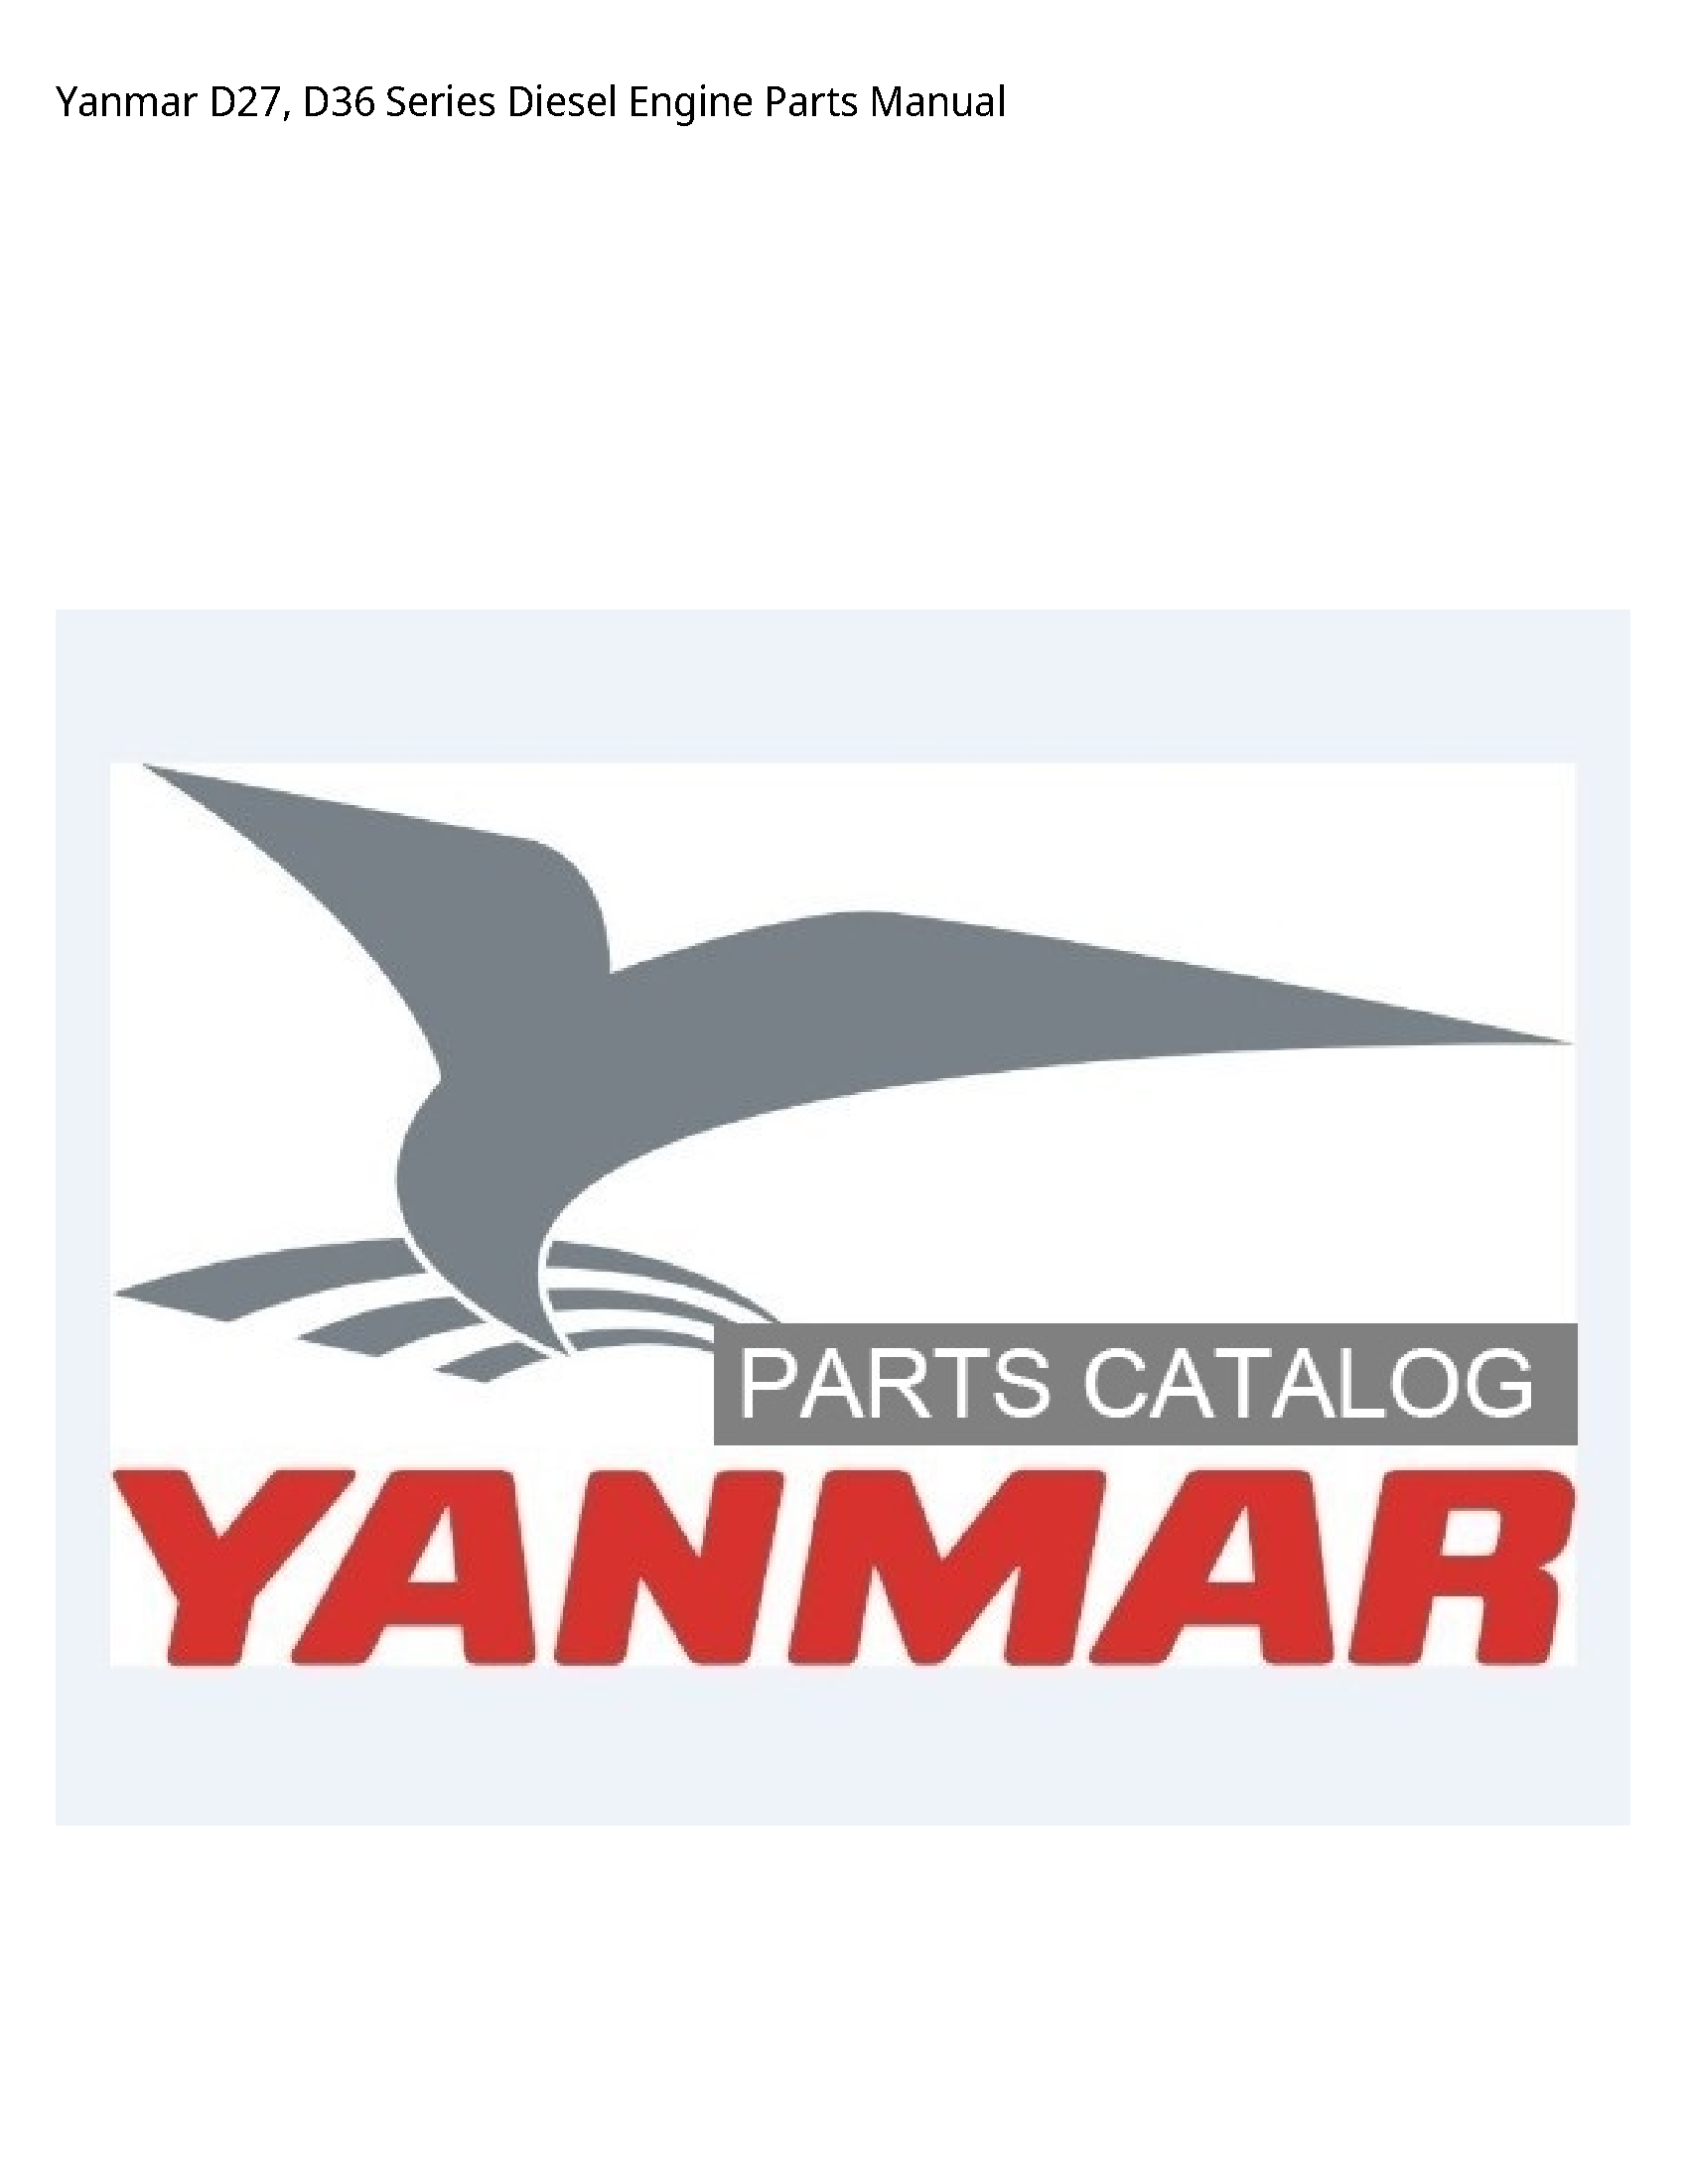 Yanmar D27 Series Diesel Engine Parts manual